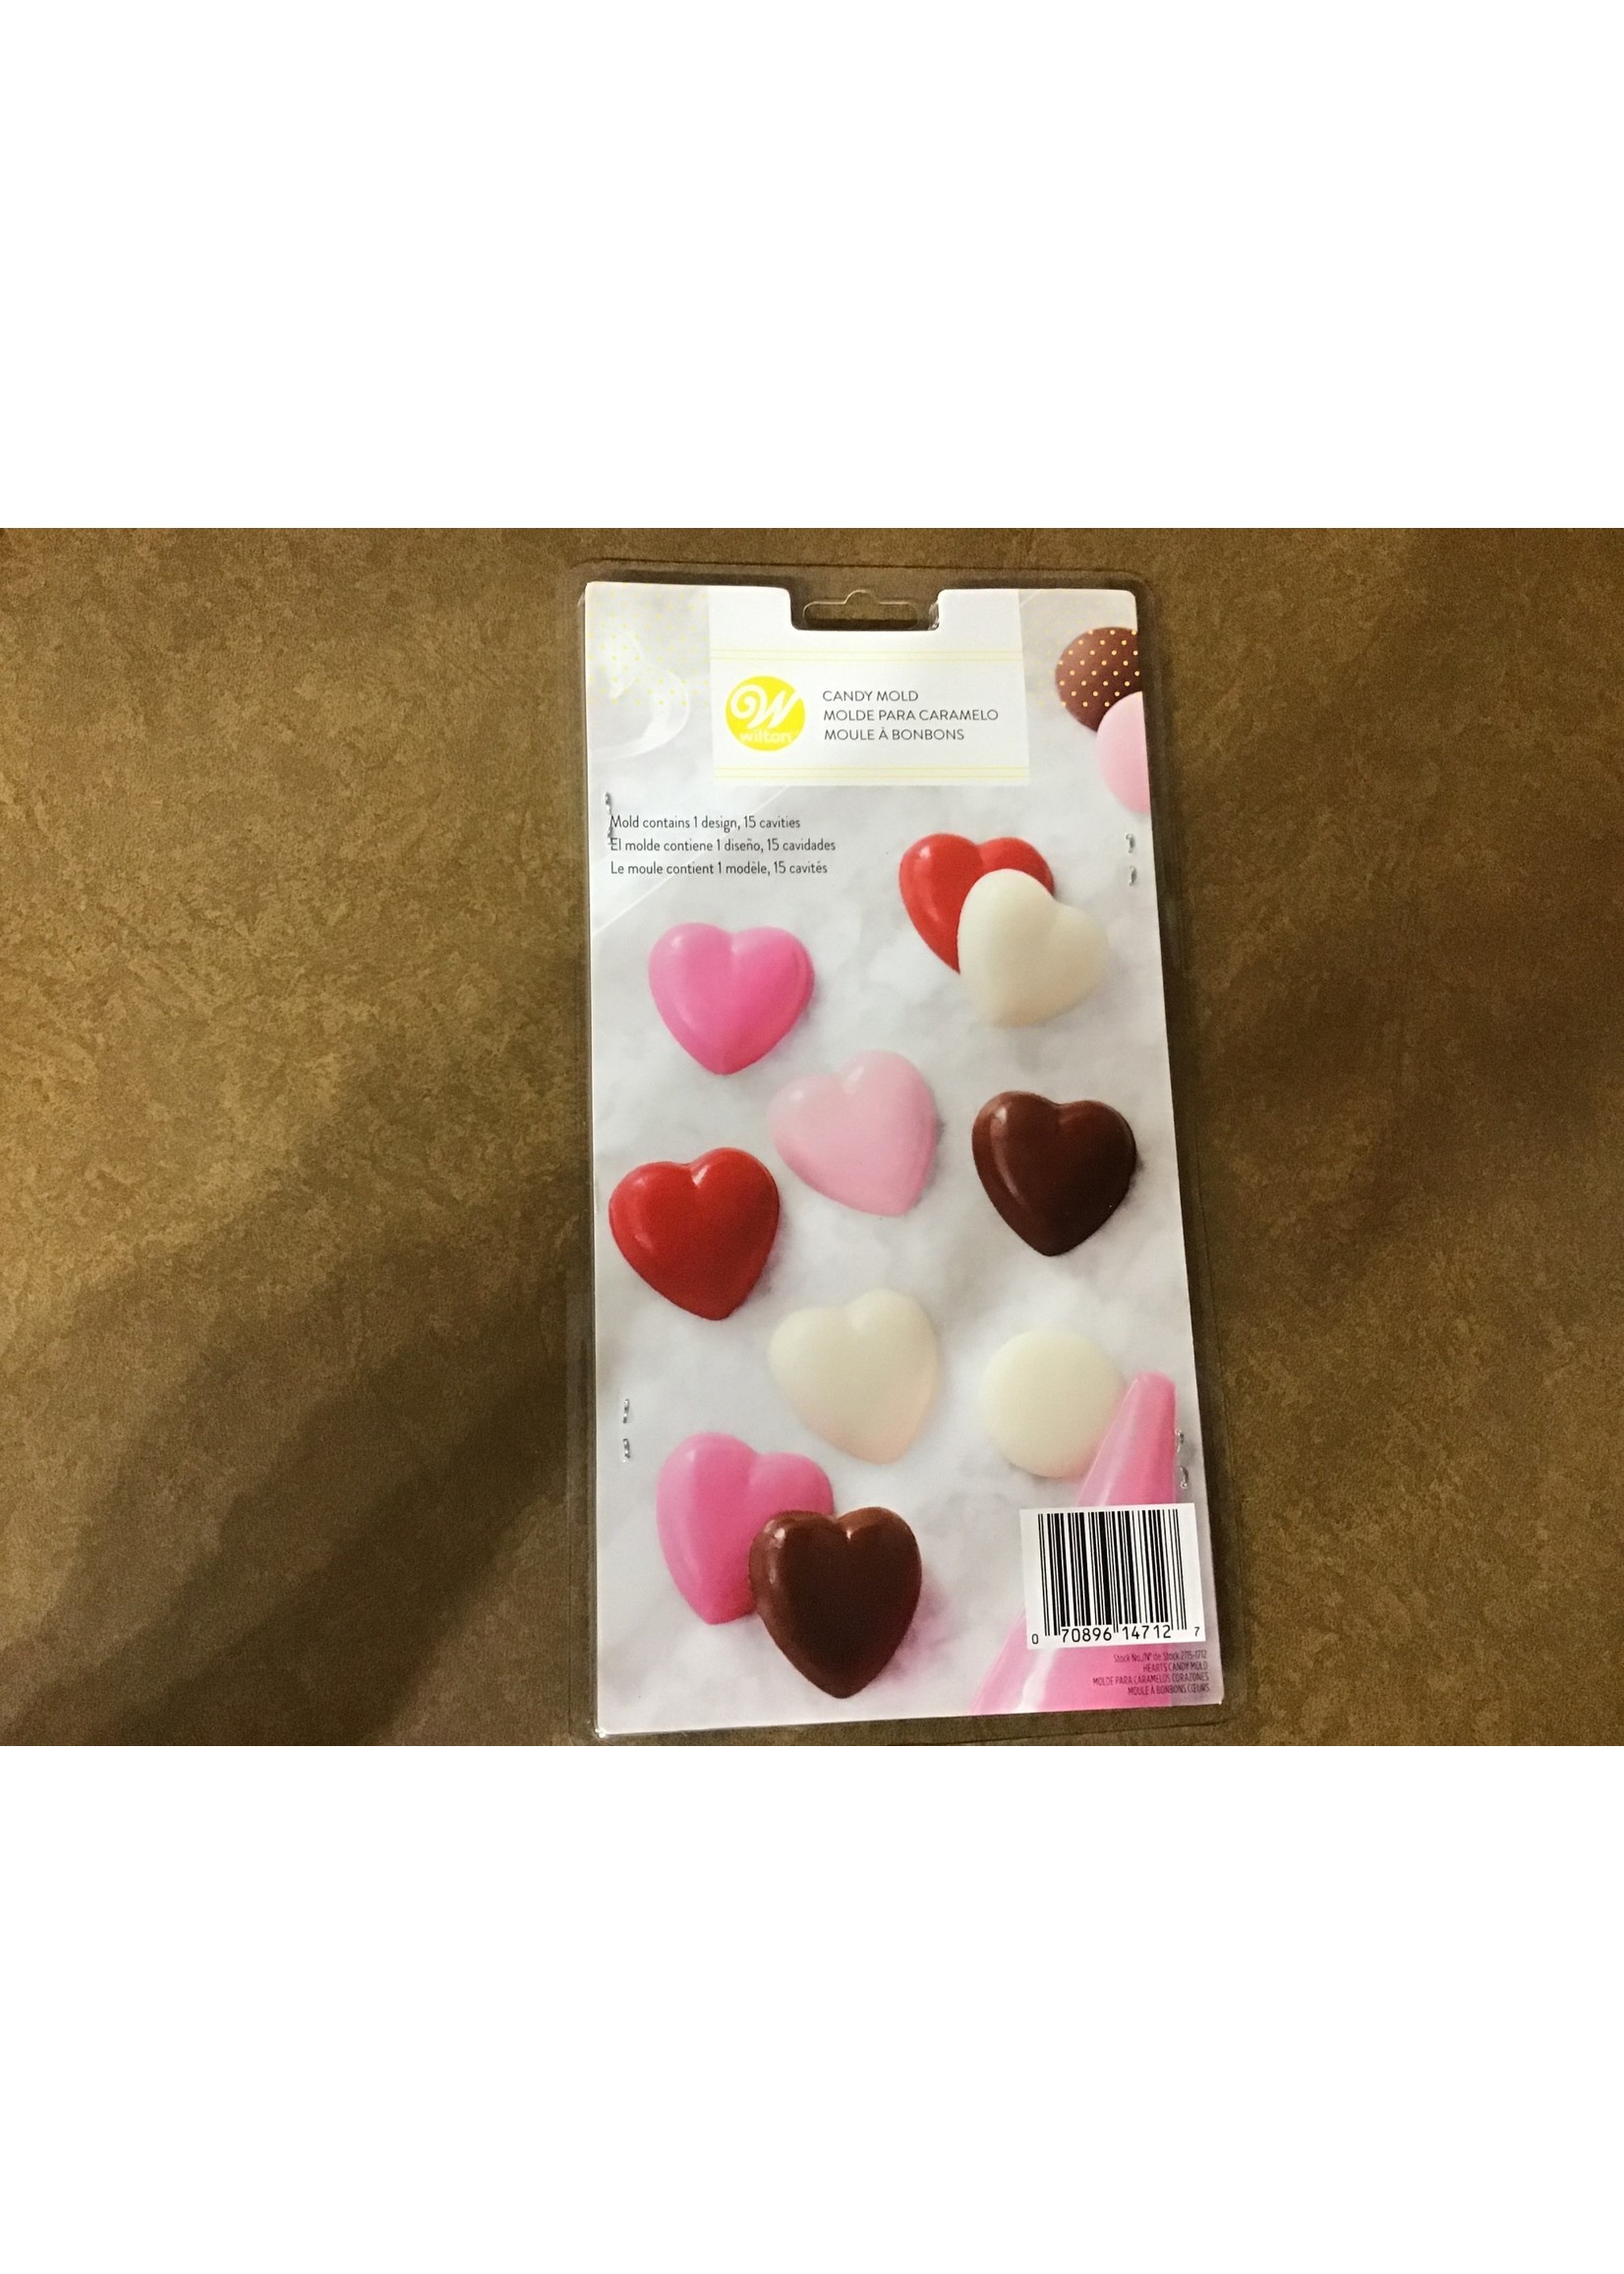 https://cdn.shoplightspeed.com/shops/633858/files/29100926/1652x2313x2/heart-candy-molds.jpg